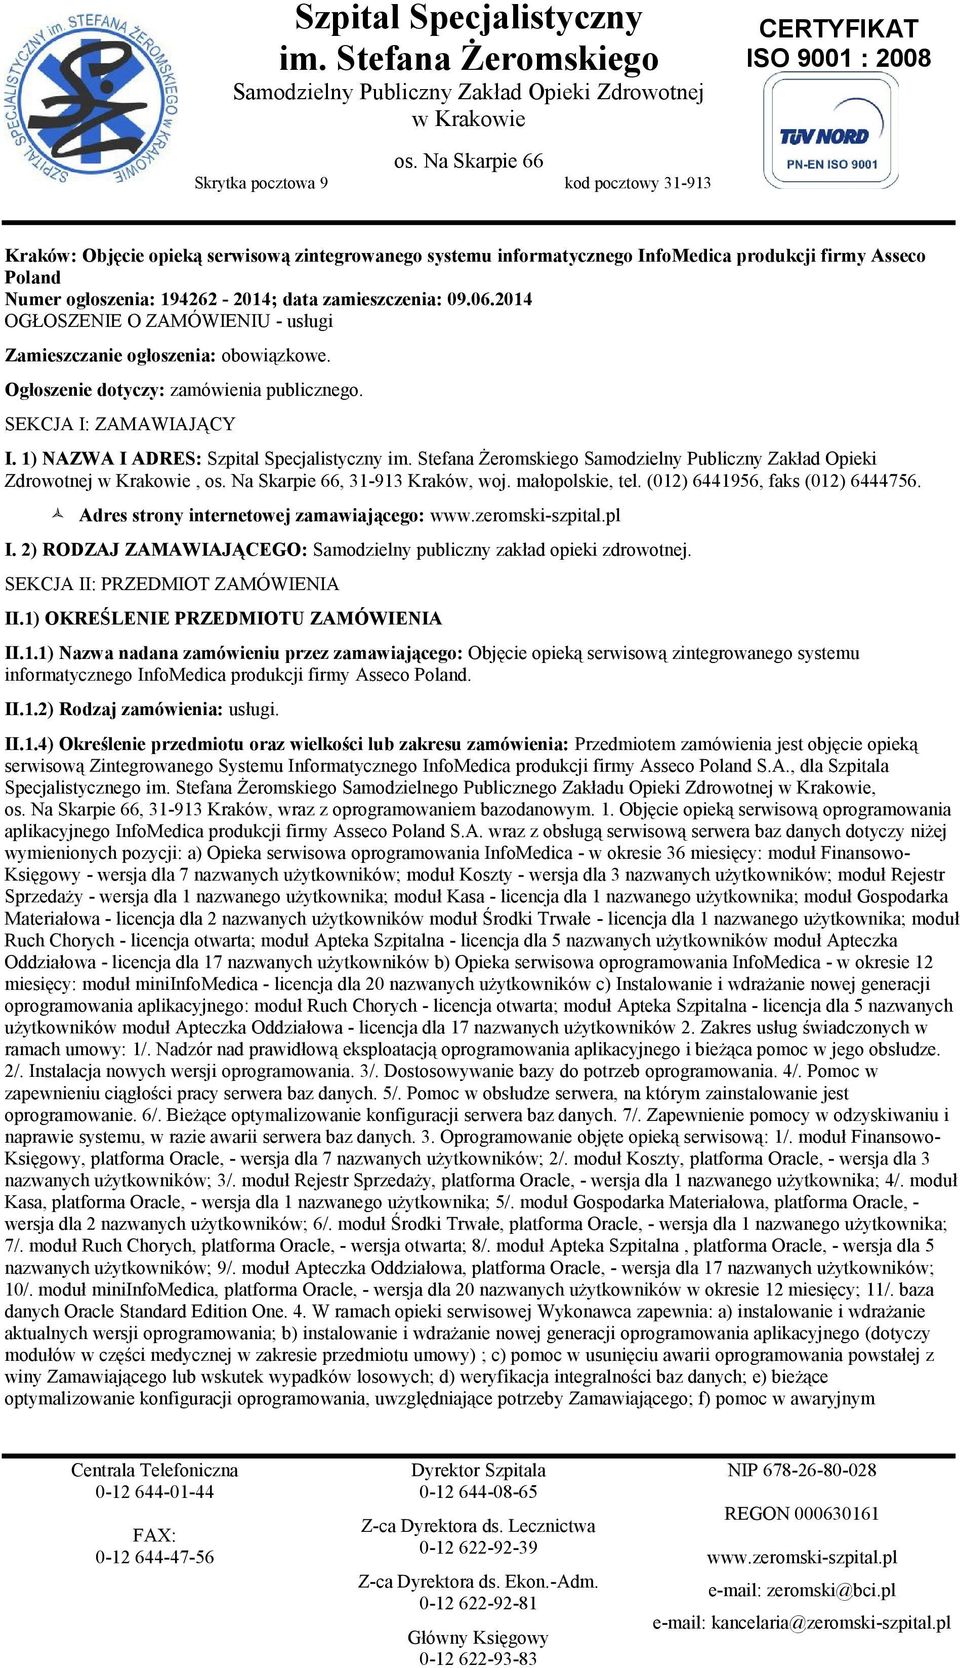 1) NAZWA I ADRES: Szpital Specjalistyczny Samodzielny Publiczny Zakład Opieki Zdrowotnej,, 31-913 Kraków, woj. małopolskie, tel. (012) 6441956, faks (012) 6444756.